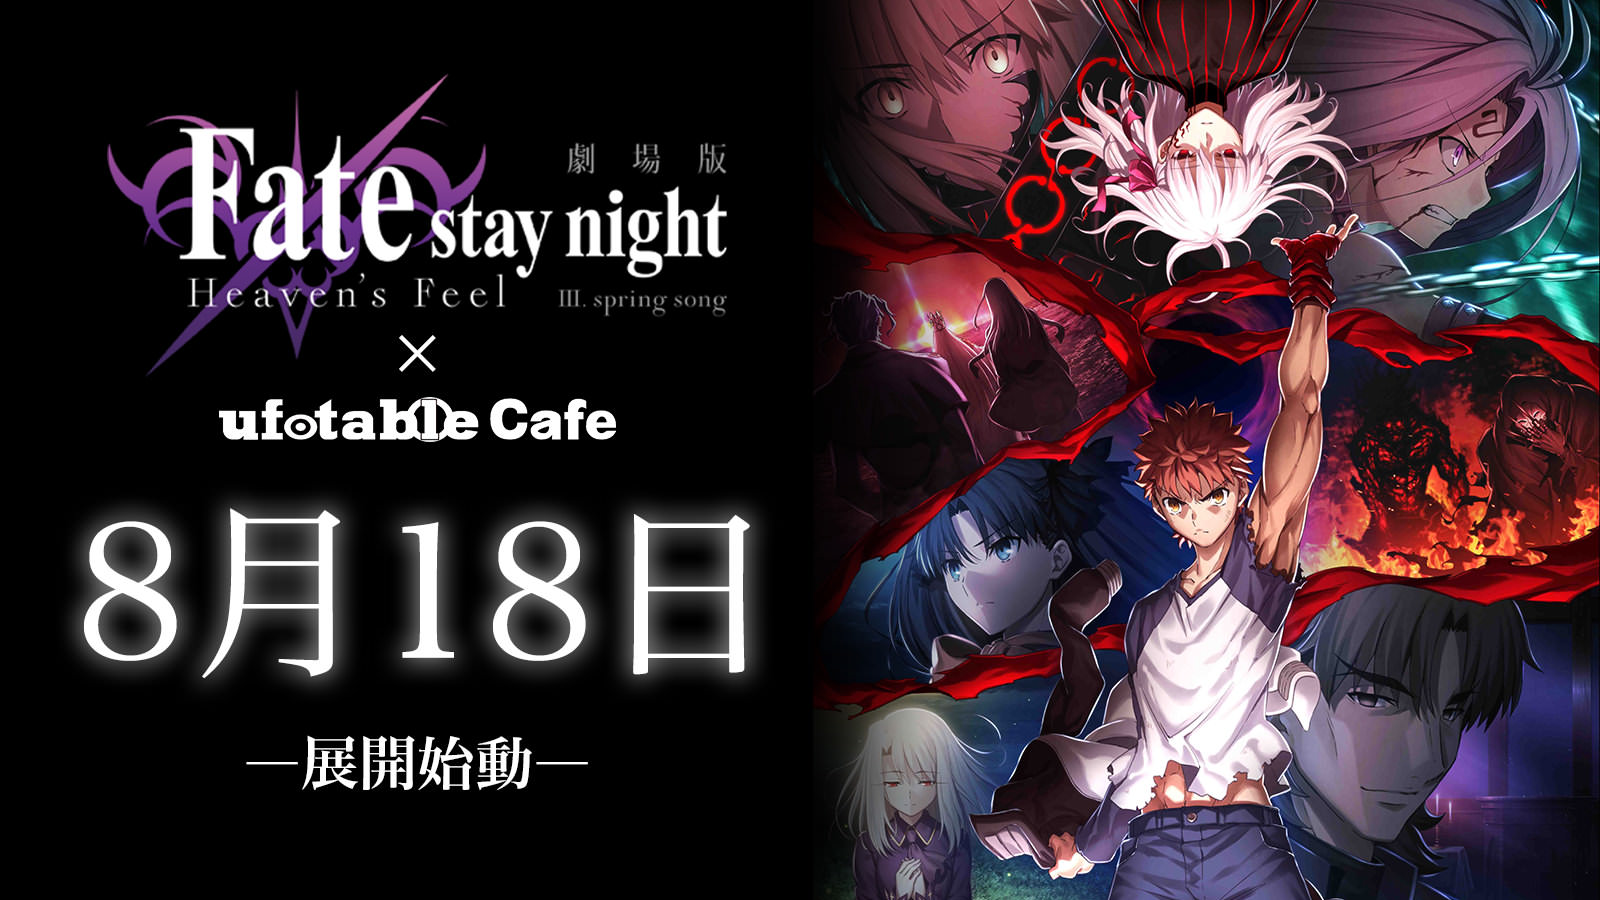 劇場版fate Stay Night Ufotable Cafe5店舗 9 6までコラボカフェ開催中